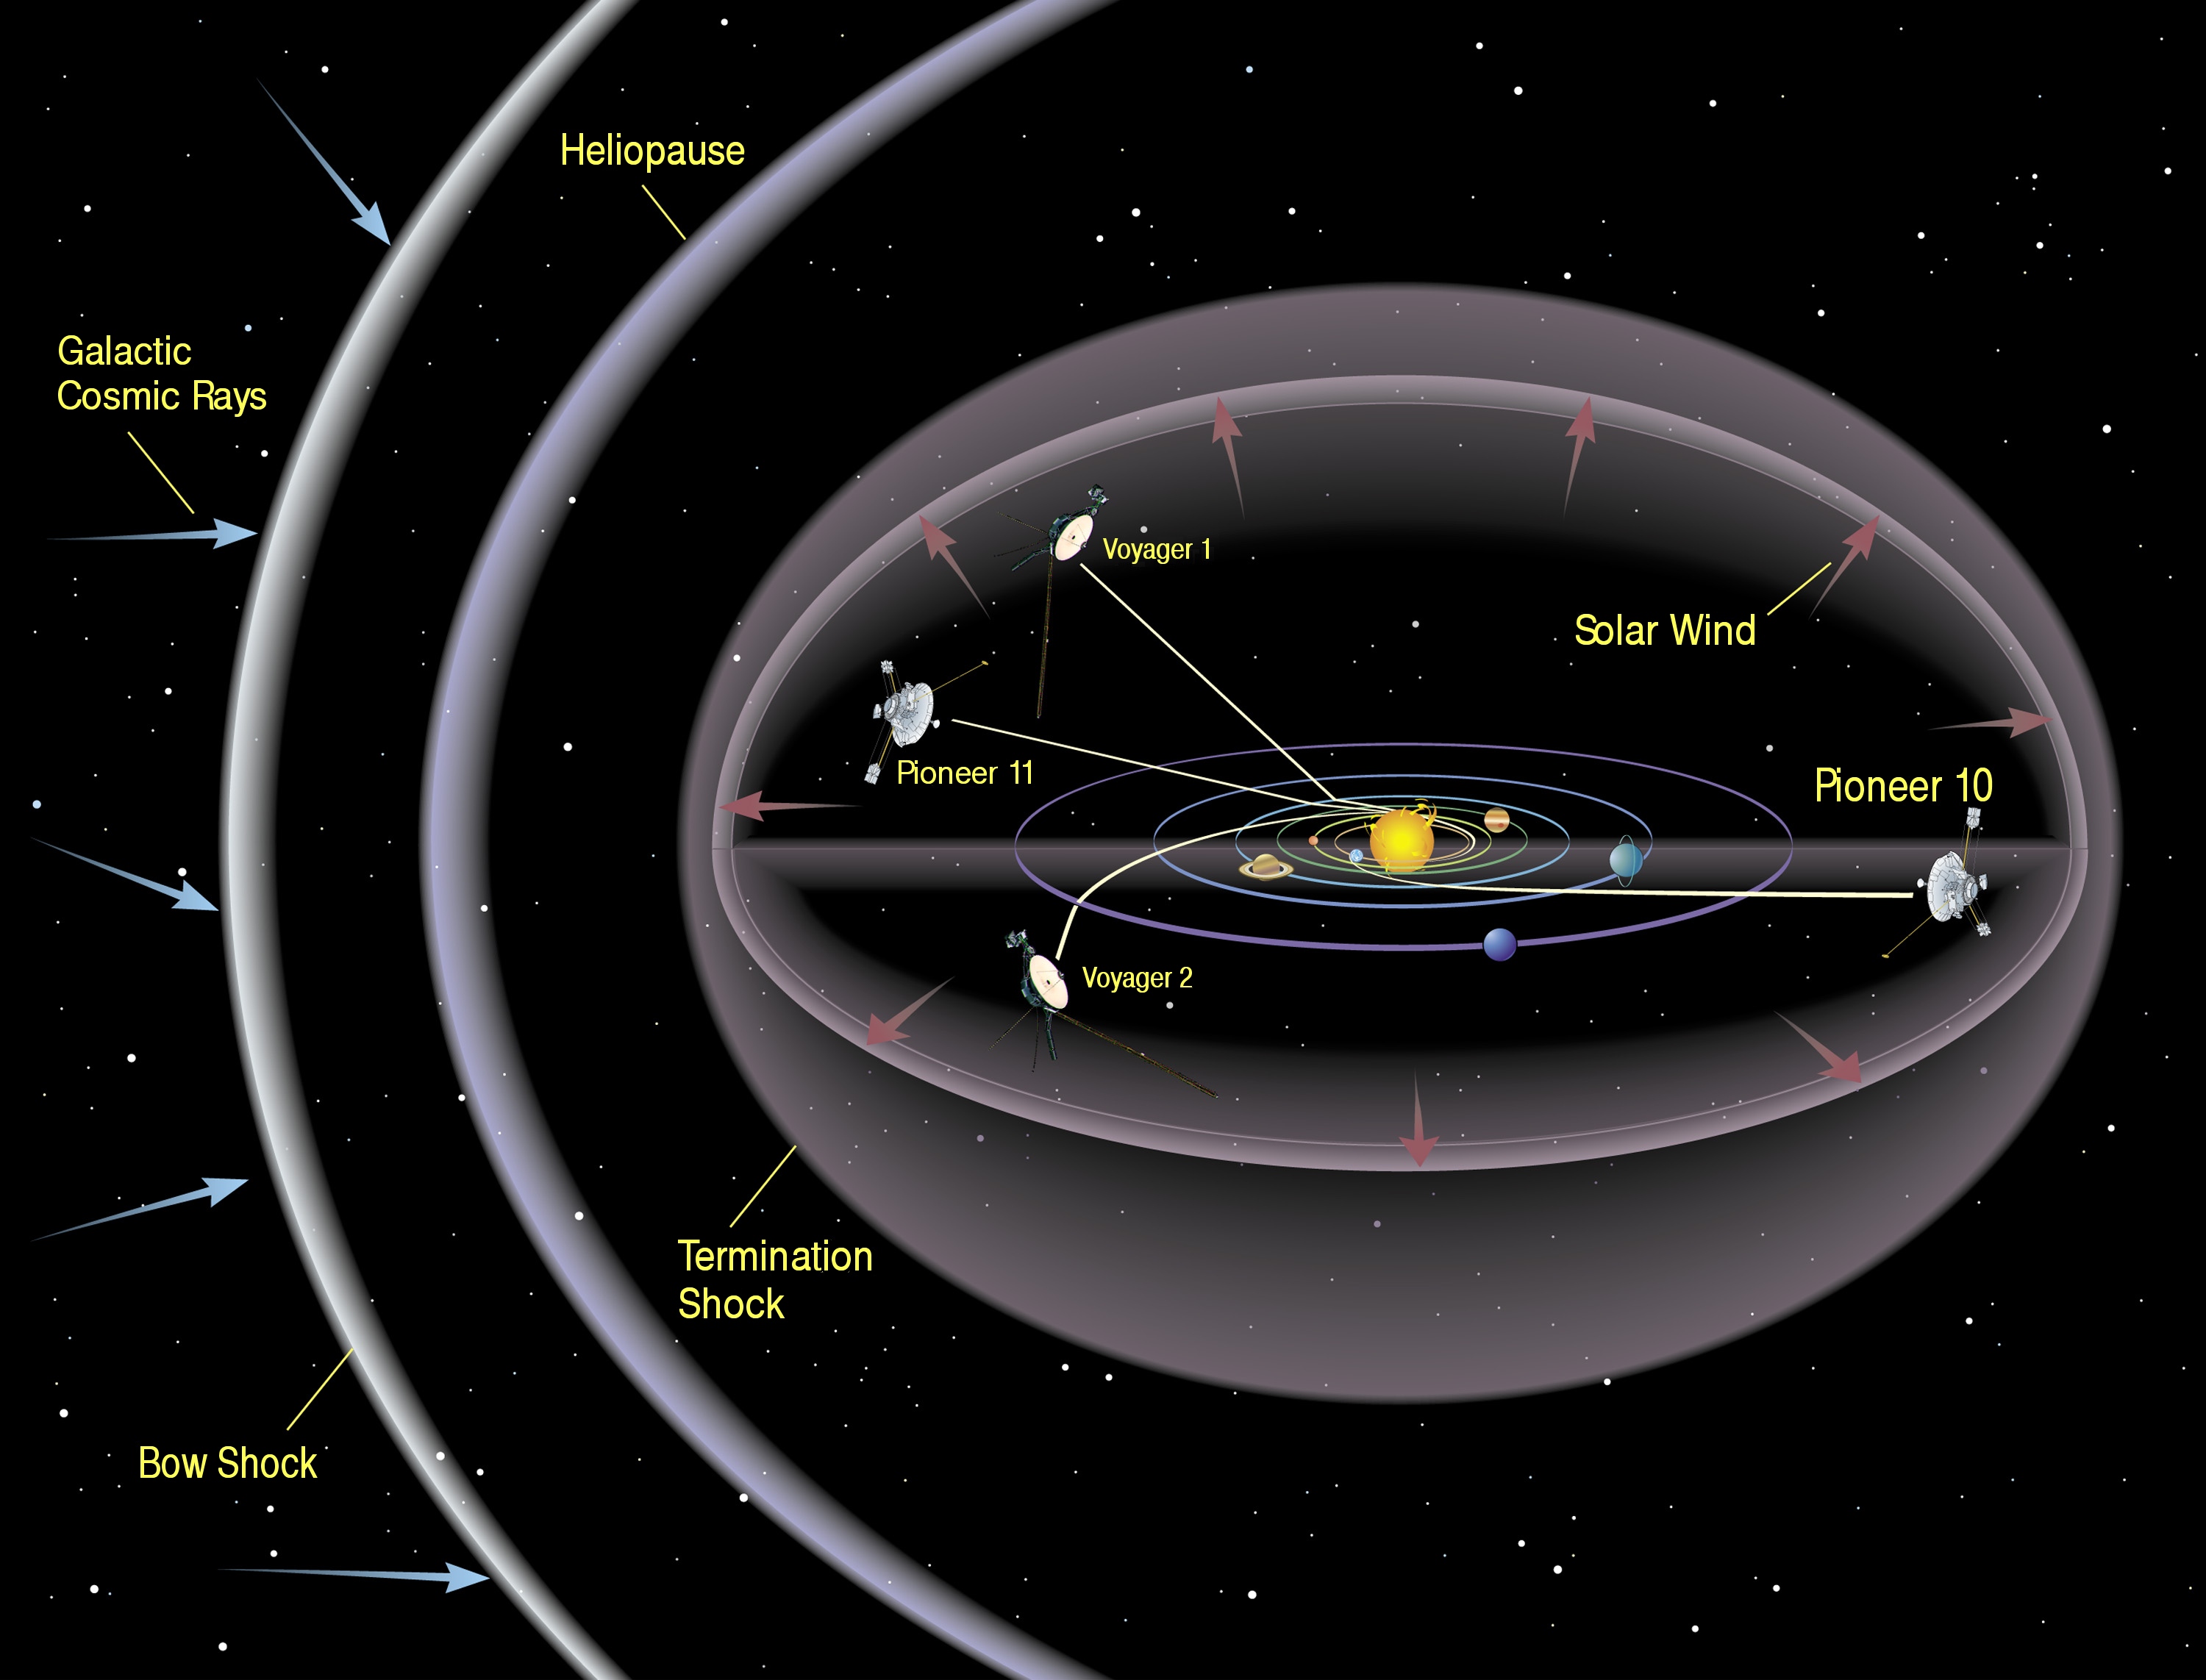 Иллюстрация выхода «Пионеров» и «Вояджеров» за пределы Солнечной системы / ©wikipedia.org